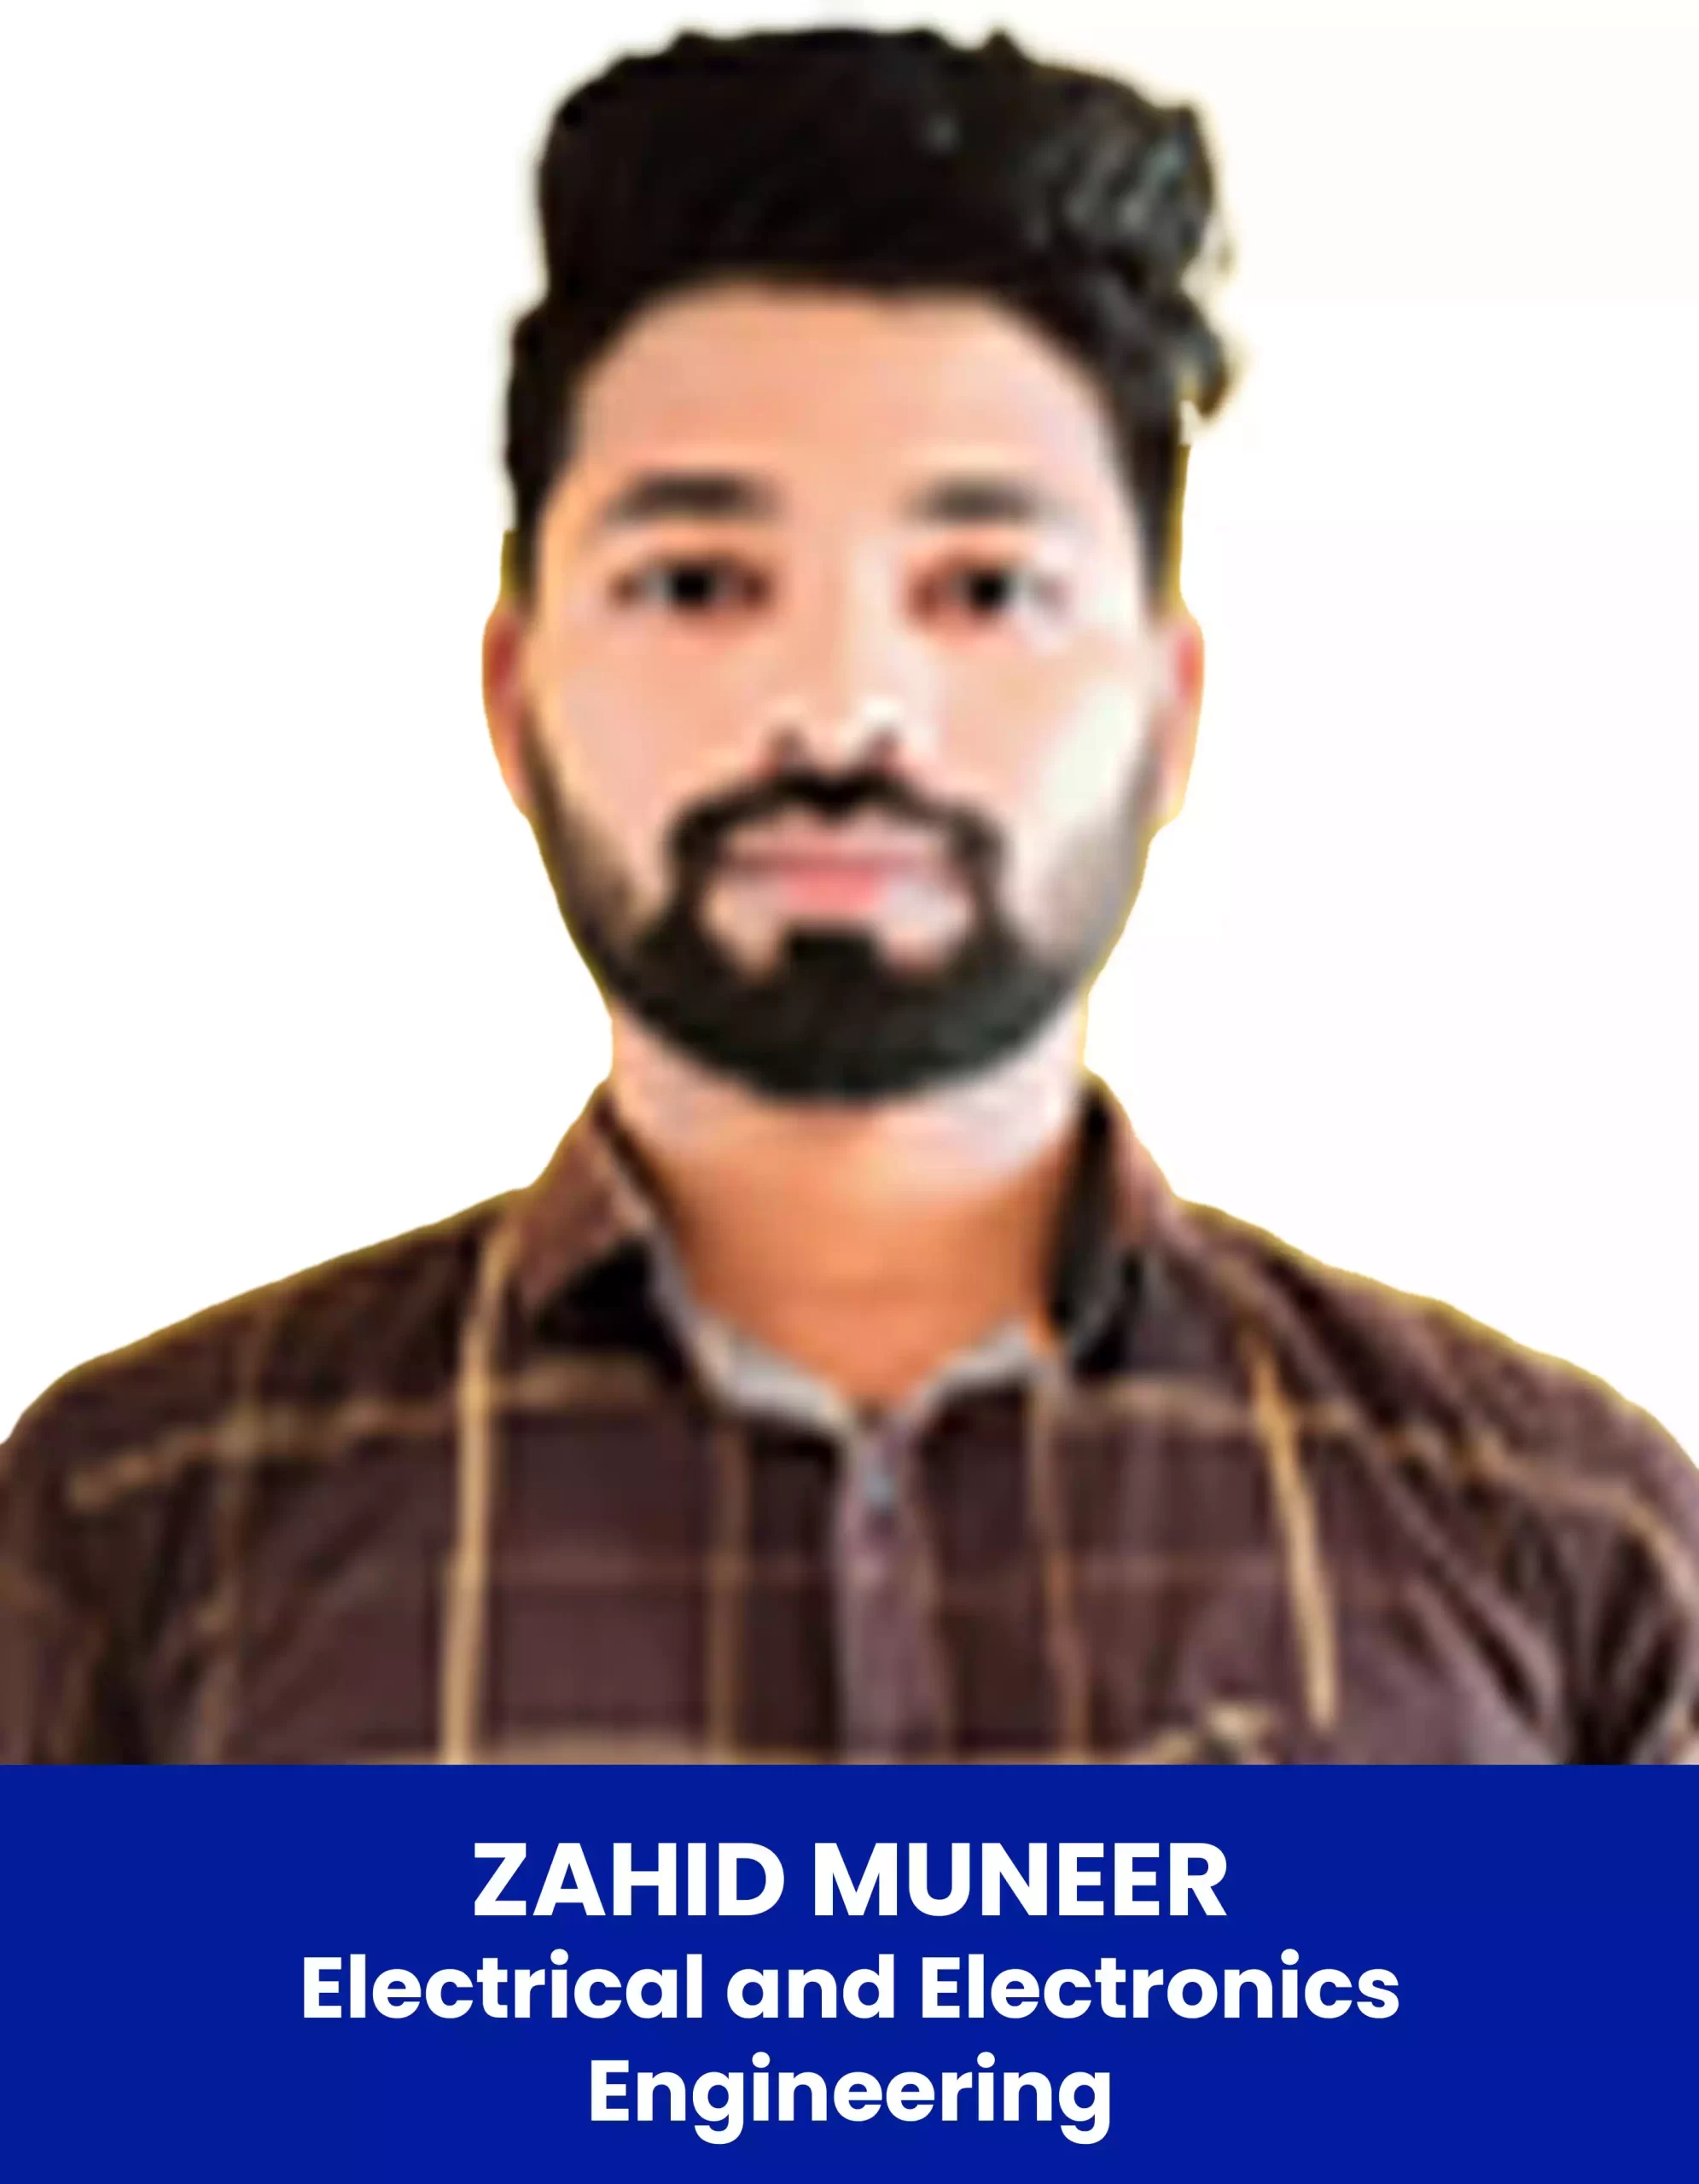 Azhid Muneer